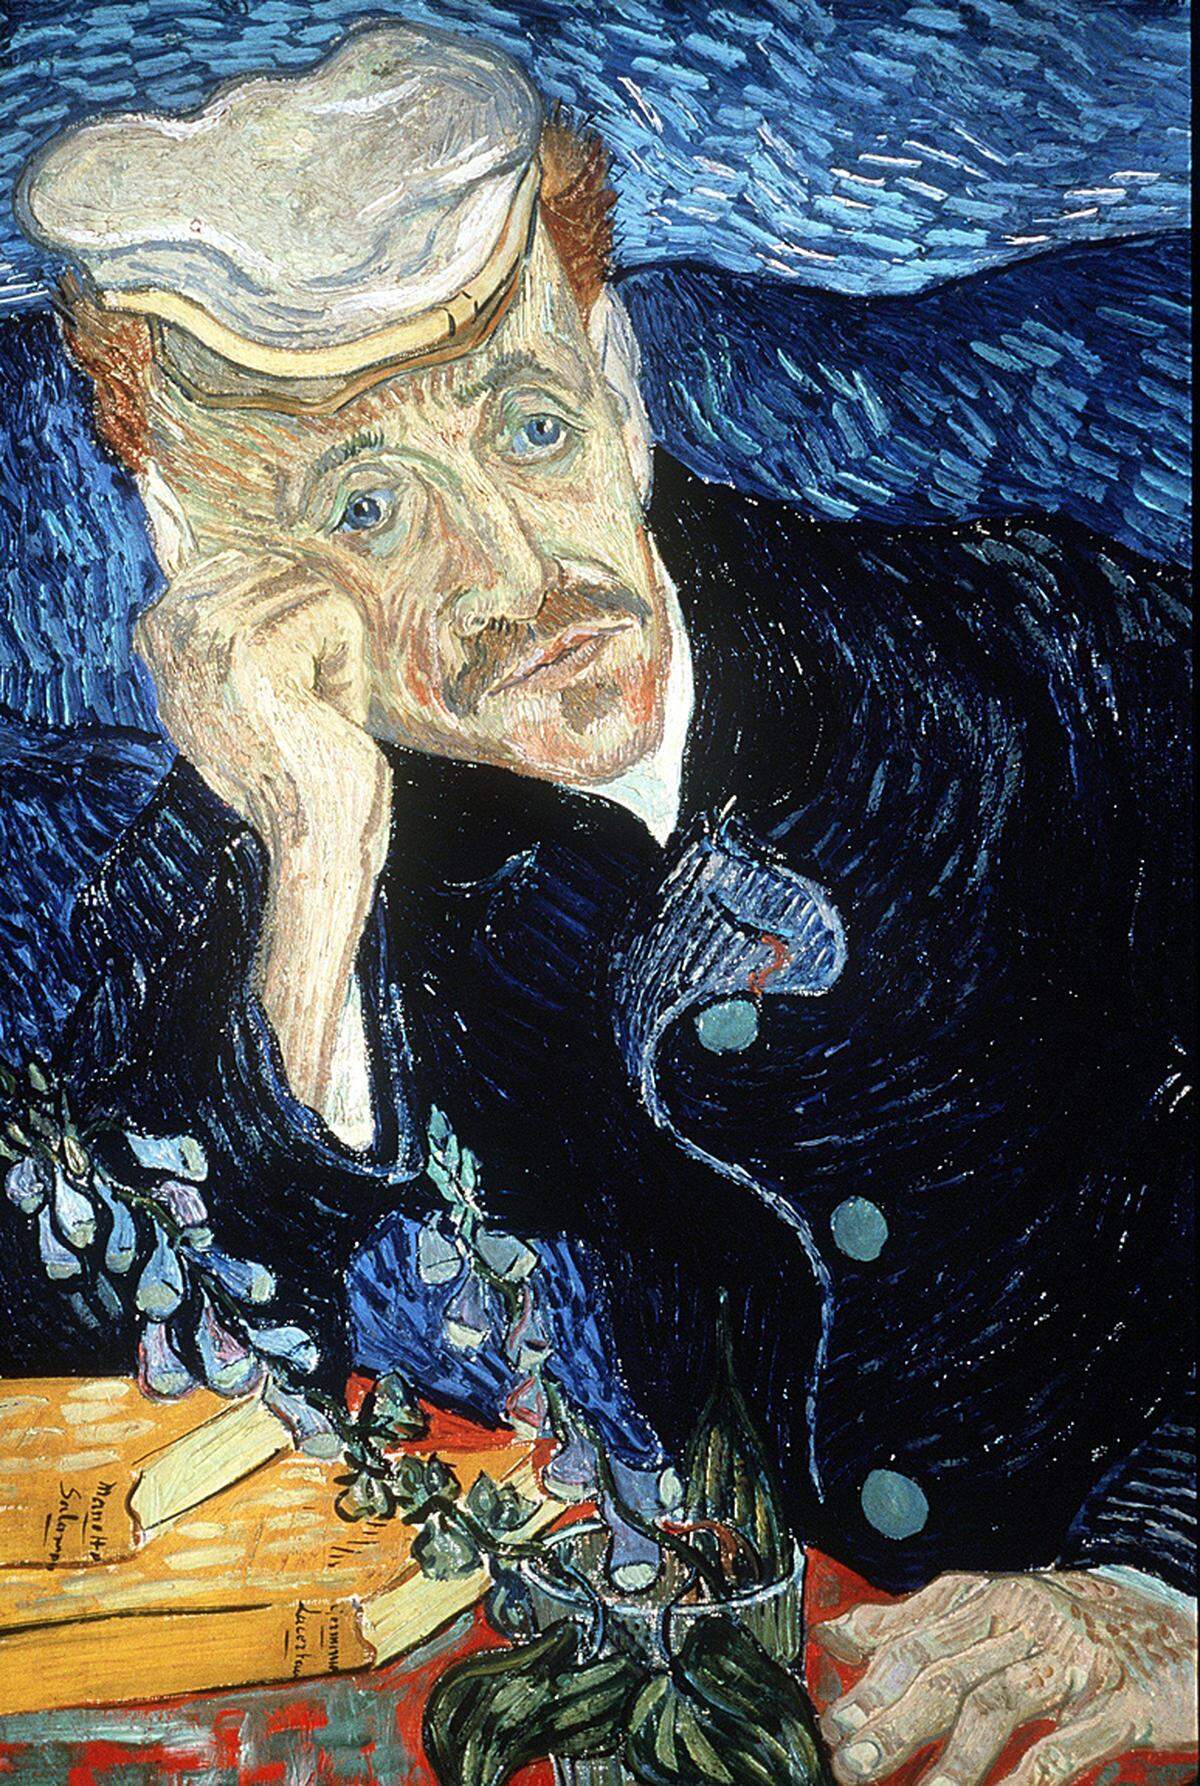 Das 1890 entstandene Werk zeigt den Arzt des Künstlers und wurde für 82,5 Millionen Dollar verkauft. Wenige Wochen nach Fertigstellung des Gemäldes schoss sich Van Gogh selbst in die Brust. In seinen letzten Stunden war der porträtierte Doktor bei ihm. Da die Kugel nicht entfernt werden konnte, versuchte er zumindest die Schmerzen des Malers zu lindern.